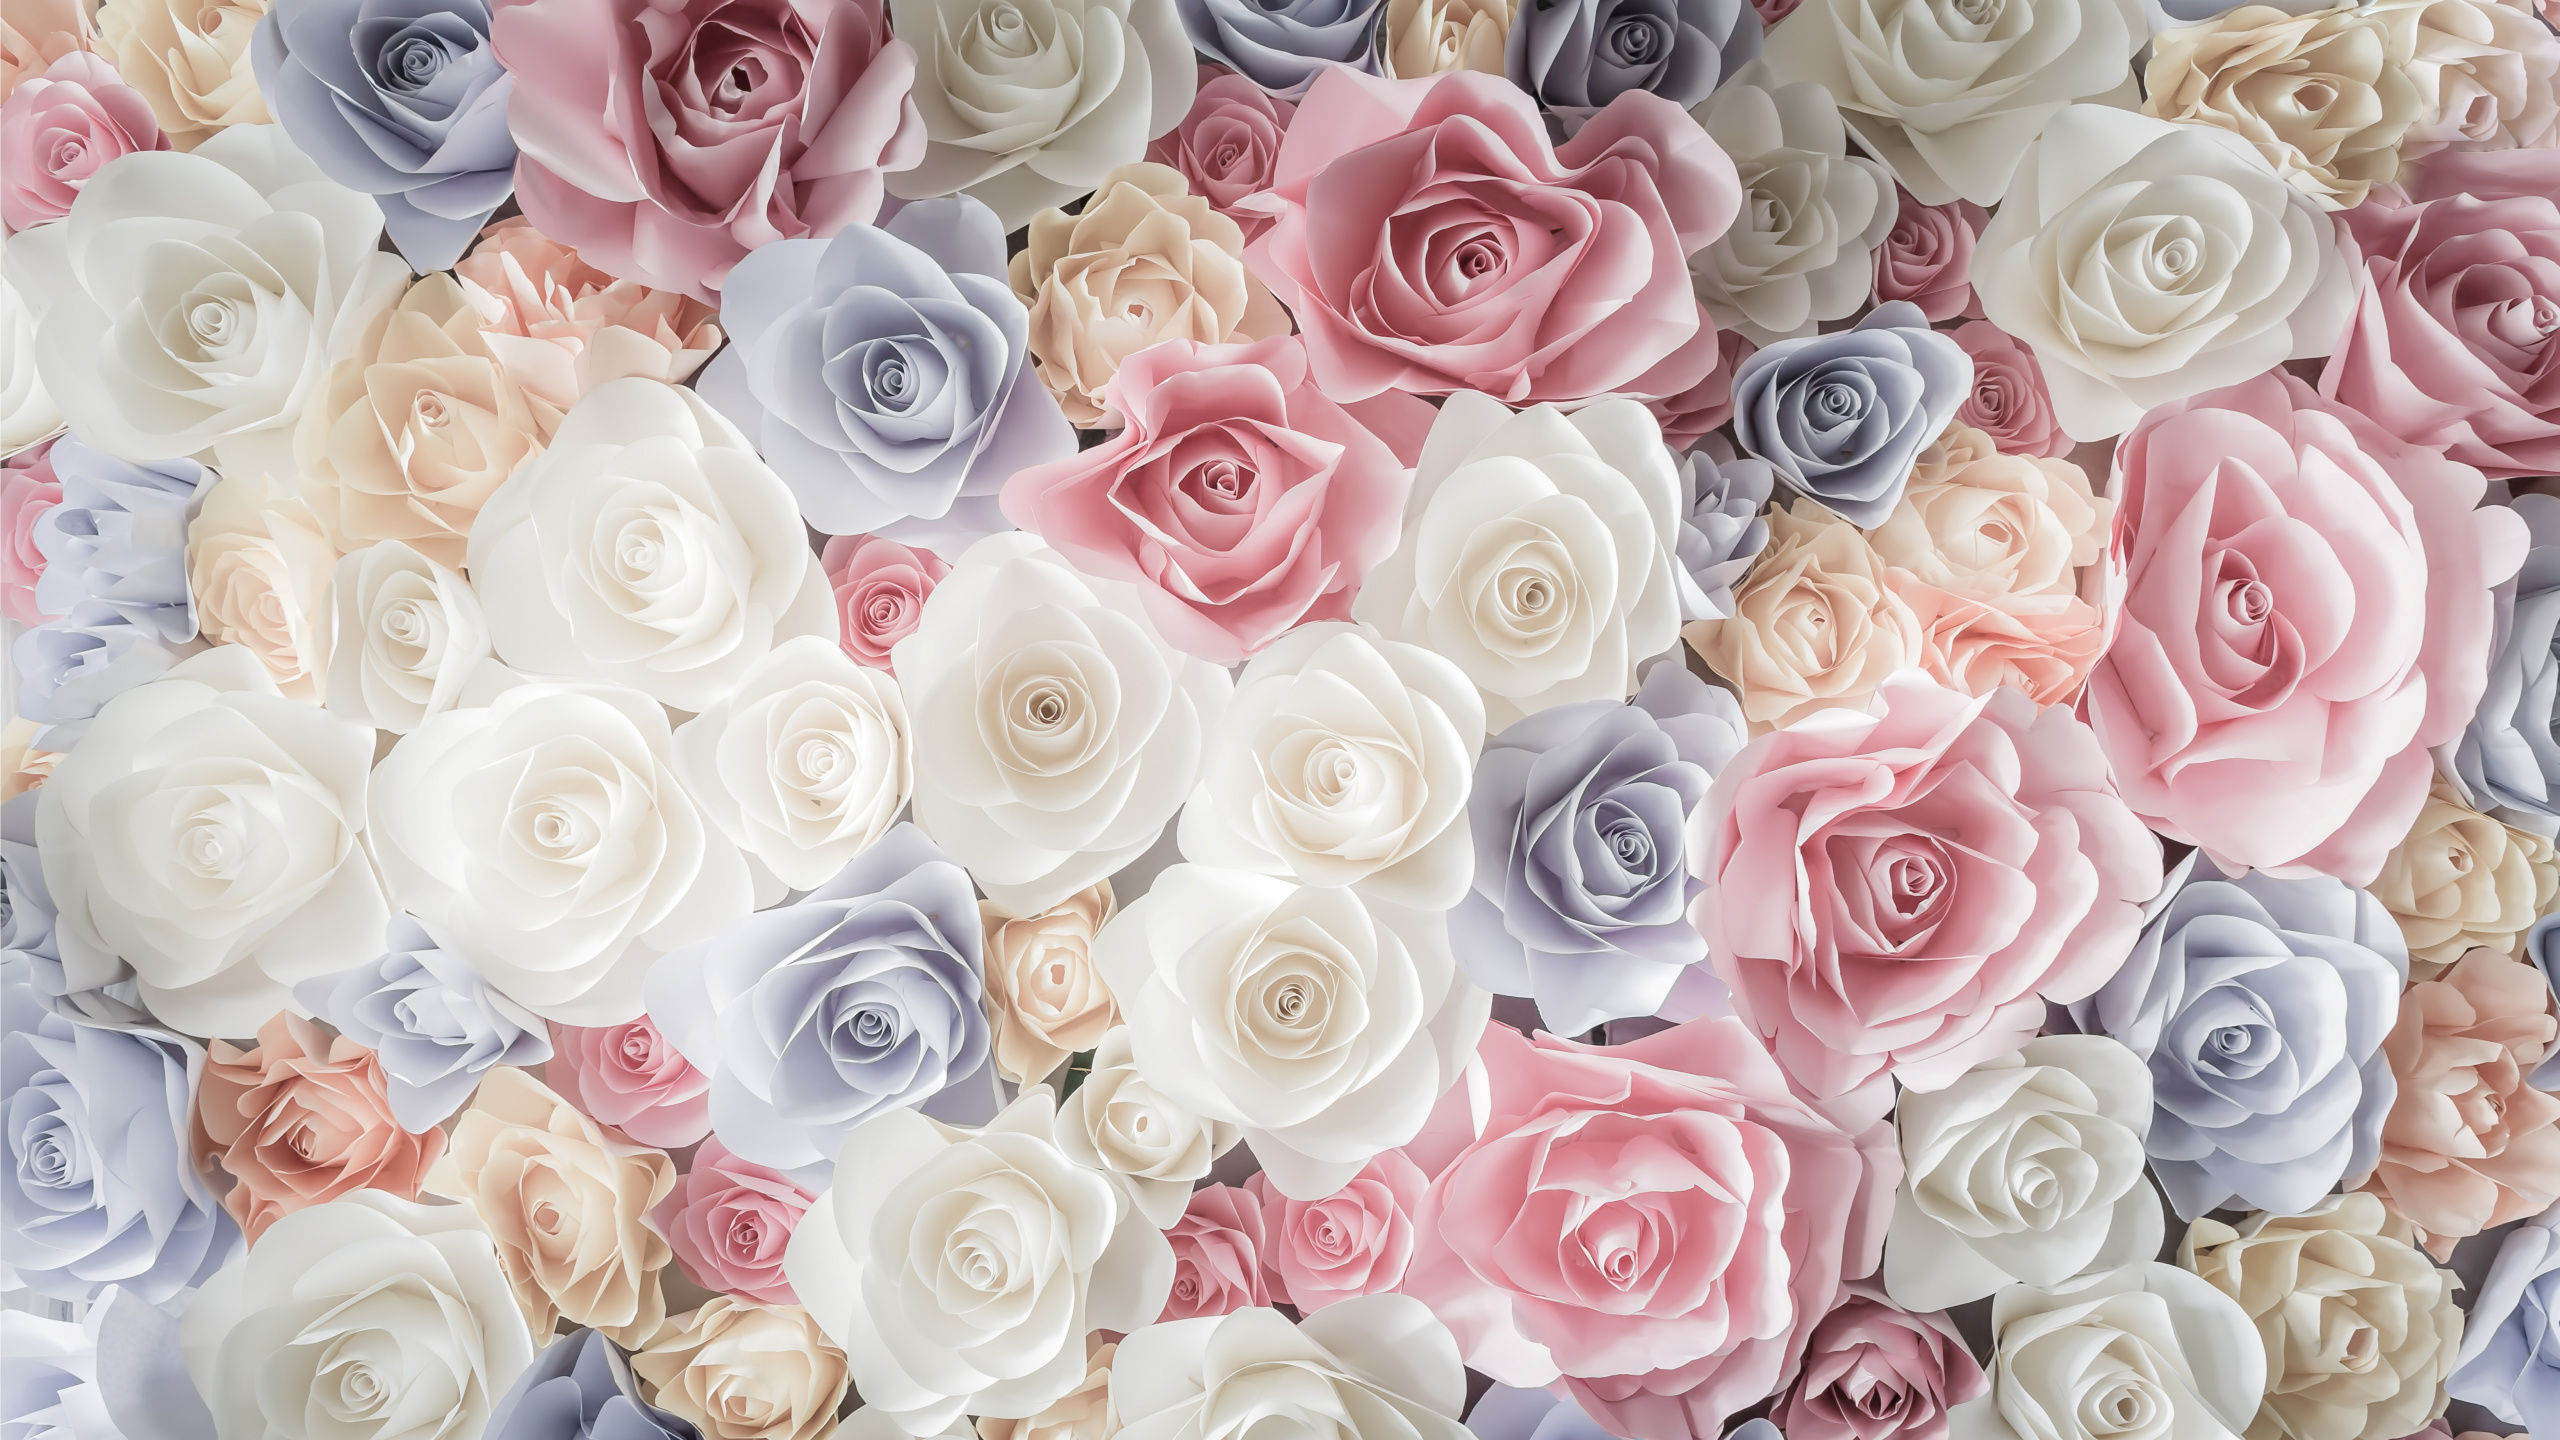 玫瑰花园, 切花, 粉红色, 玫瑰家庭, 花卉设计 壁纸 2560x1440 允许